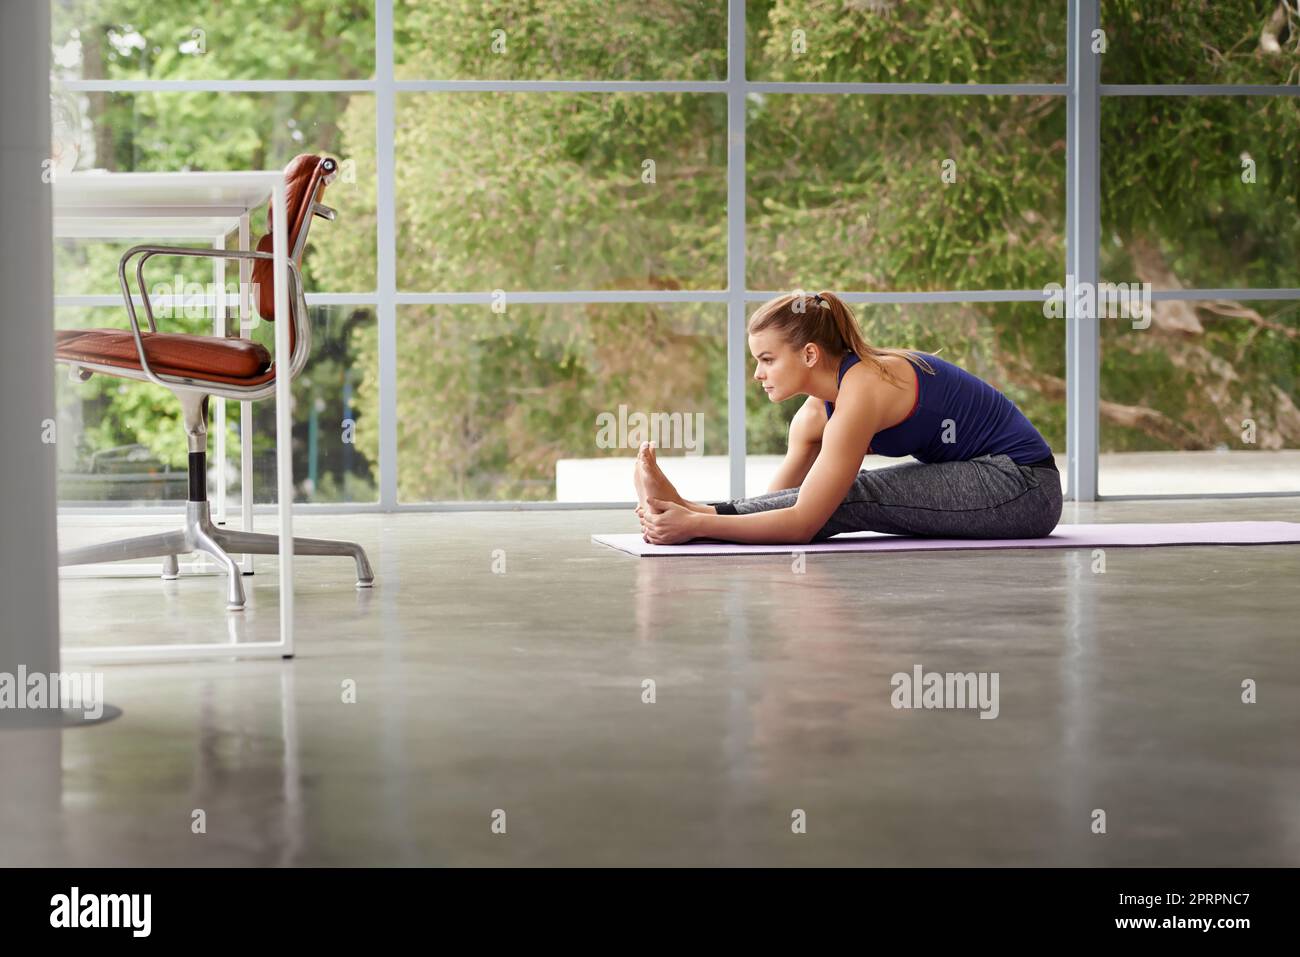 Le yoga est la clé de la santé. Prise de vue en longueur d'une femme sportive pratiquant le yoga à la maison Banque D'Images